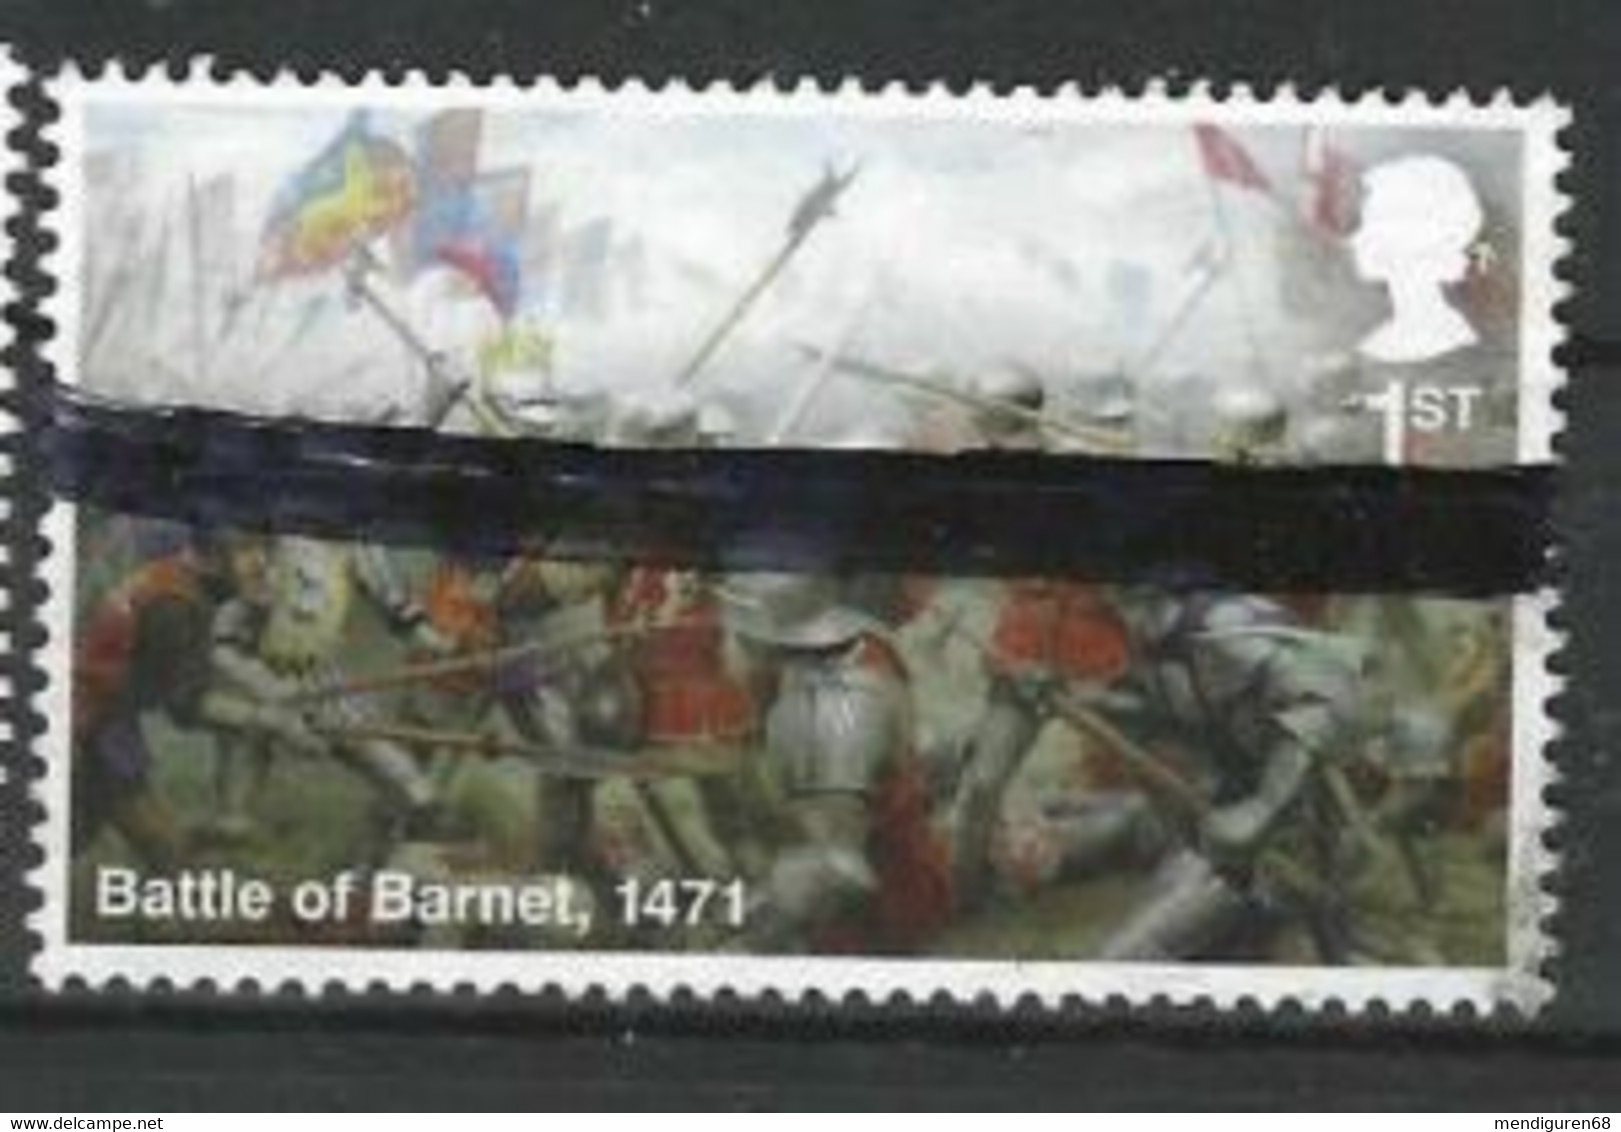 GROSSBRITANNIEN GRANDE BRETAGNE GB 2021 THE WARS OF THE ROSES: Battle Of BARNE 1471 USED SG 451 MI 4761 YT 5175 SC 4101 - Oblitérés